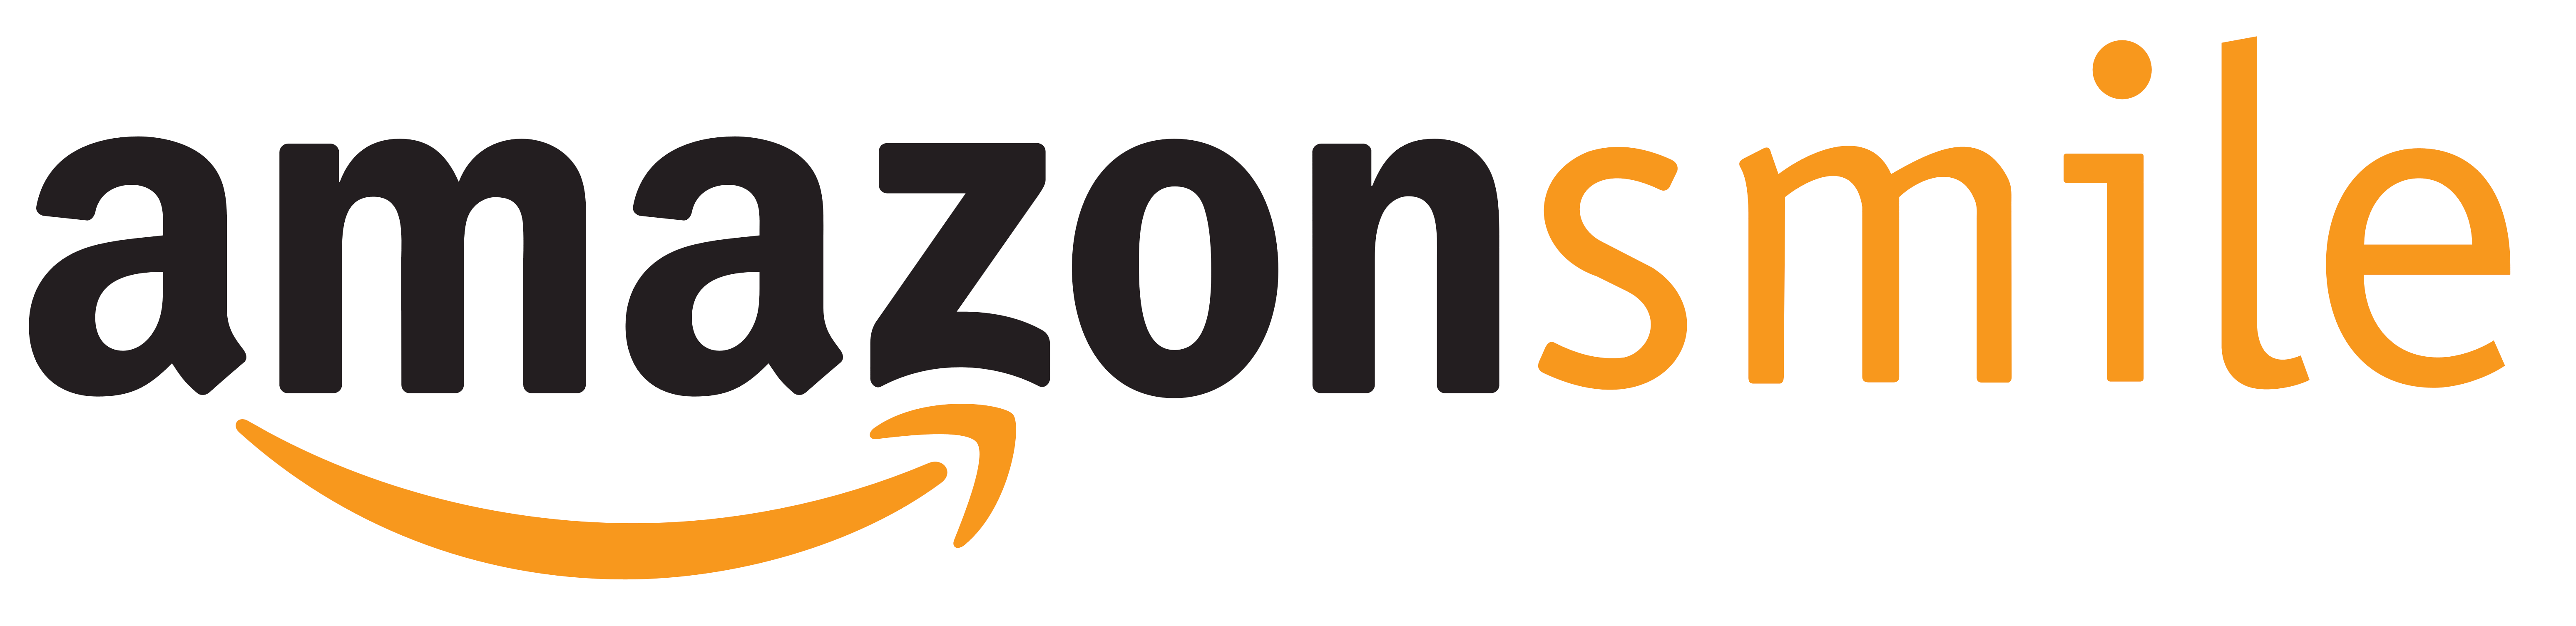 Amazon Smile – Logos Download - Amazon Smile Logo Graphics